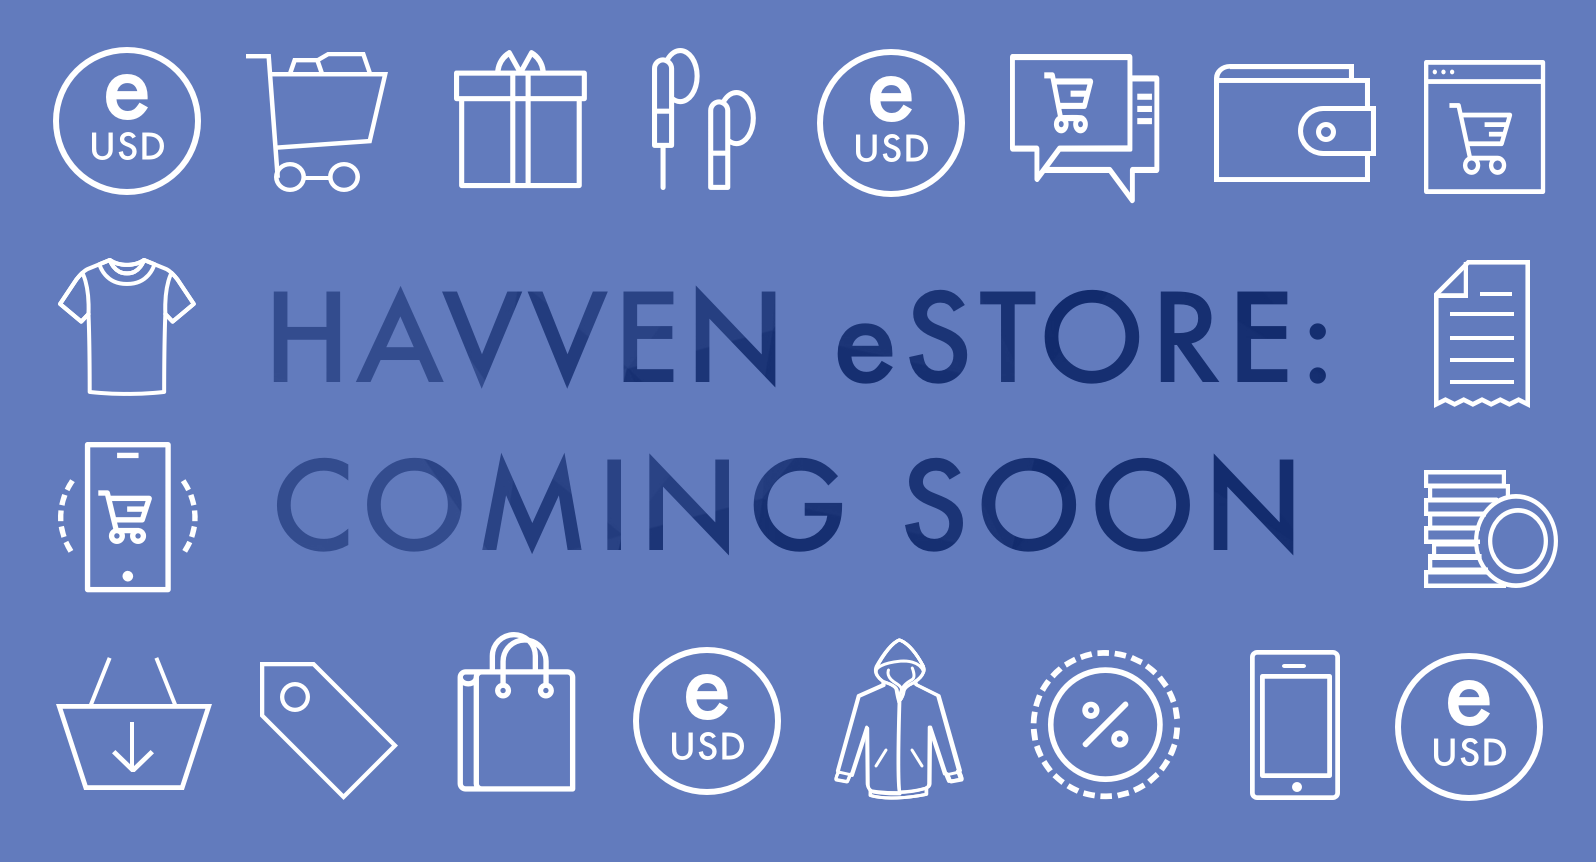 The Havven eStore is coming!